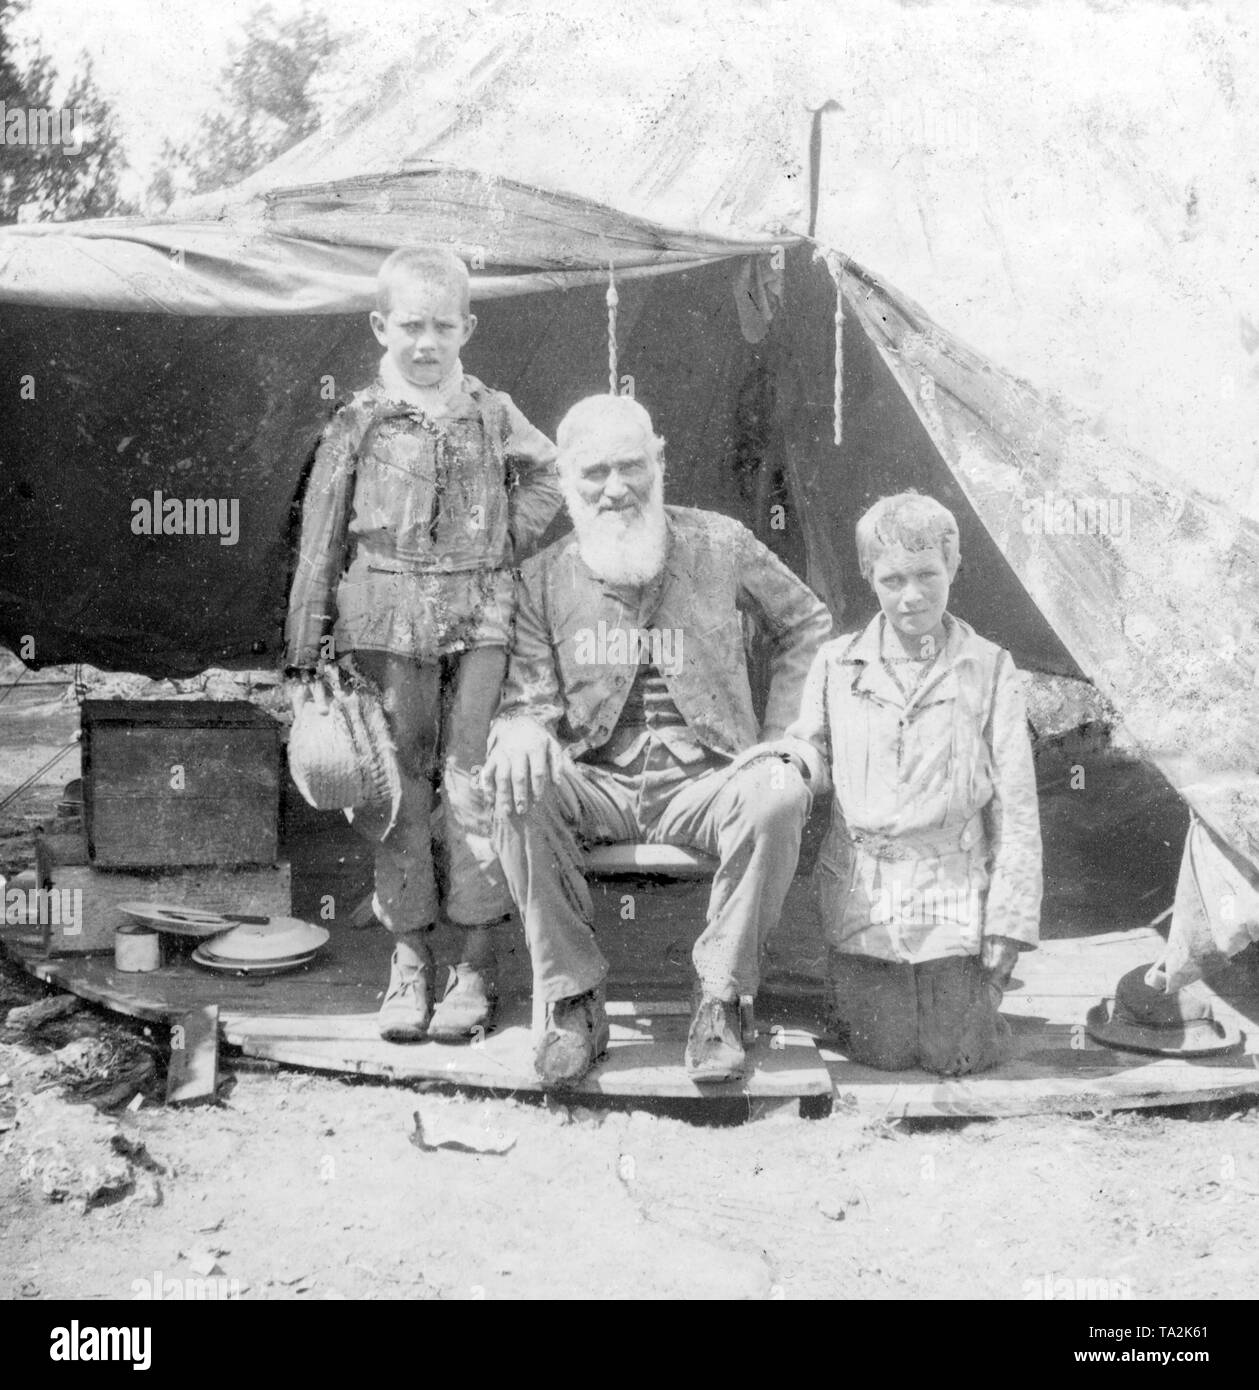 Boers capturés en provenance d'Afrique du Sud, camp de concentration, 1899-1902 : Boers dans un camp de prisonniers sur les Bermudes - un vieux Boer avec ses petits-enfants. Banque D'Images